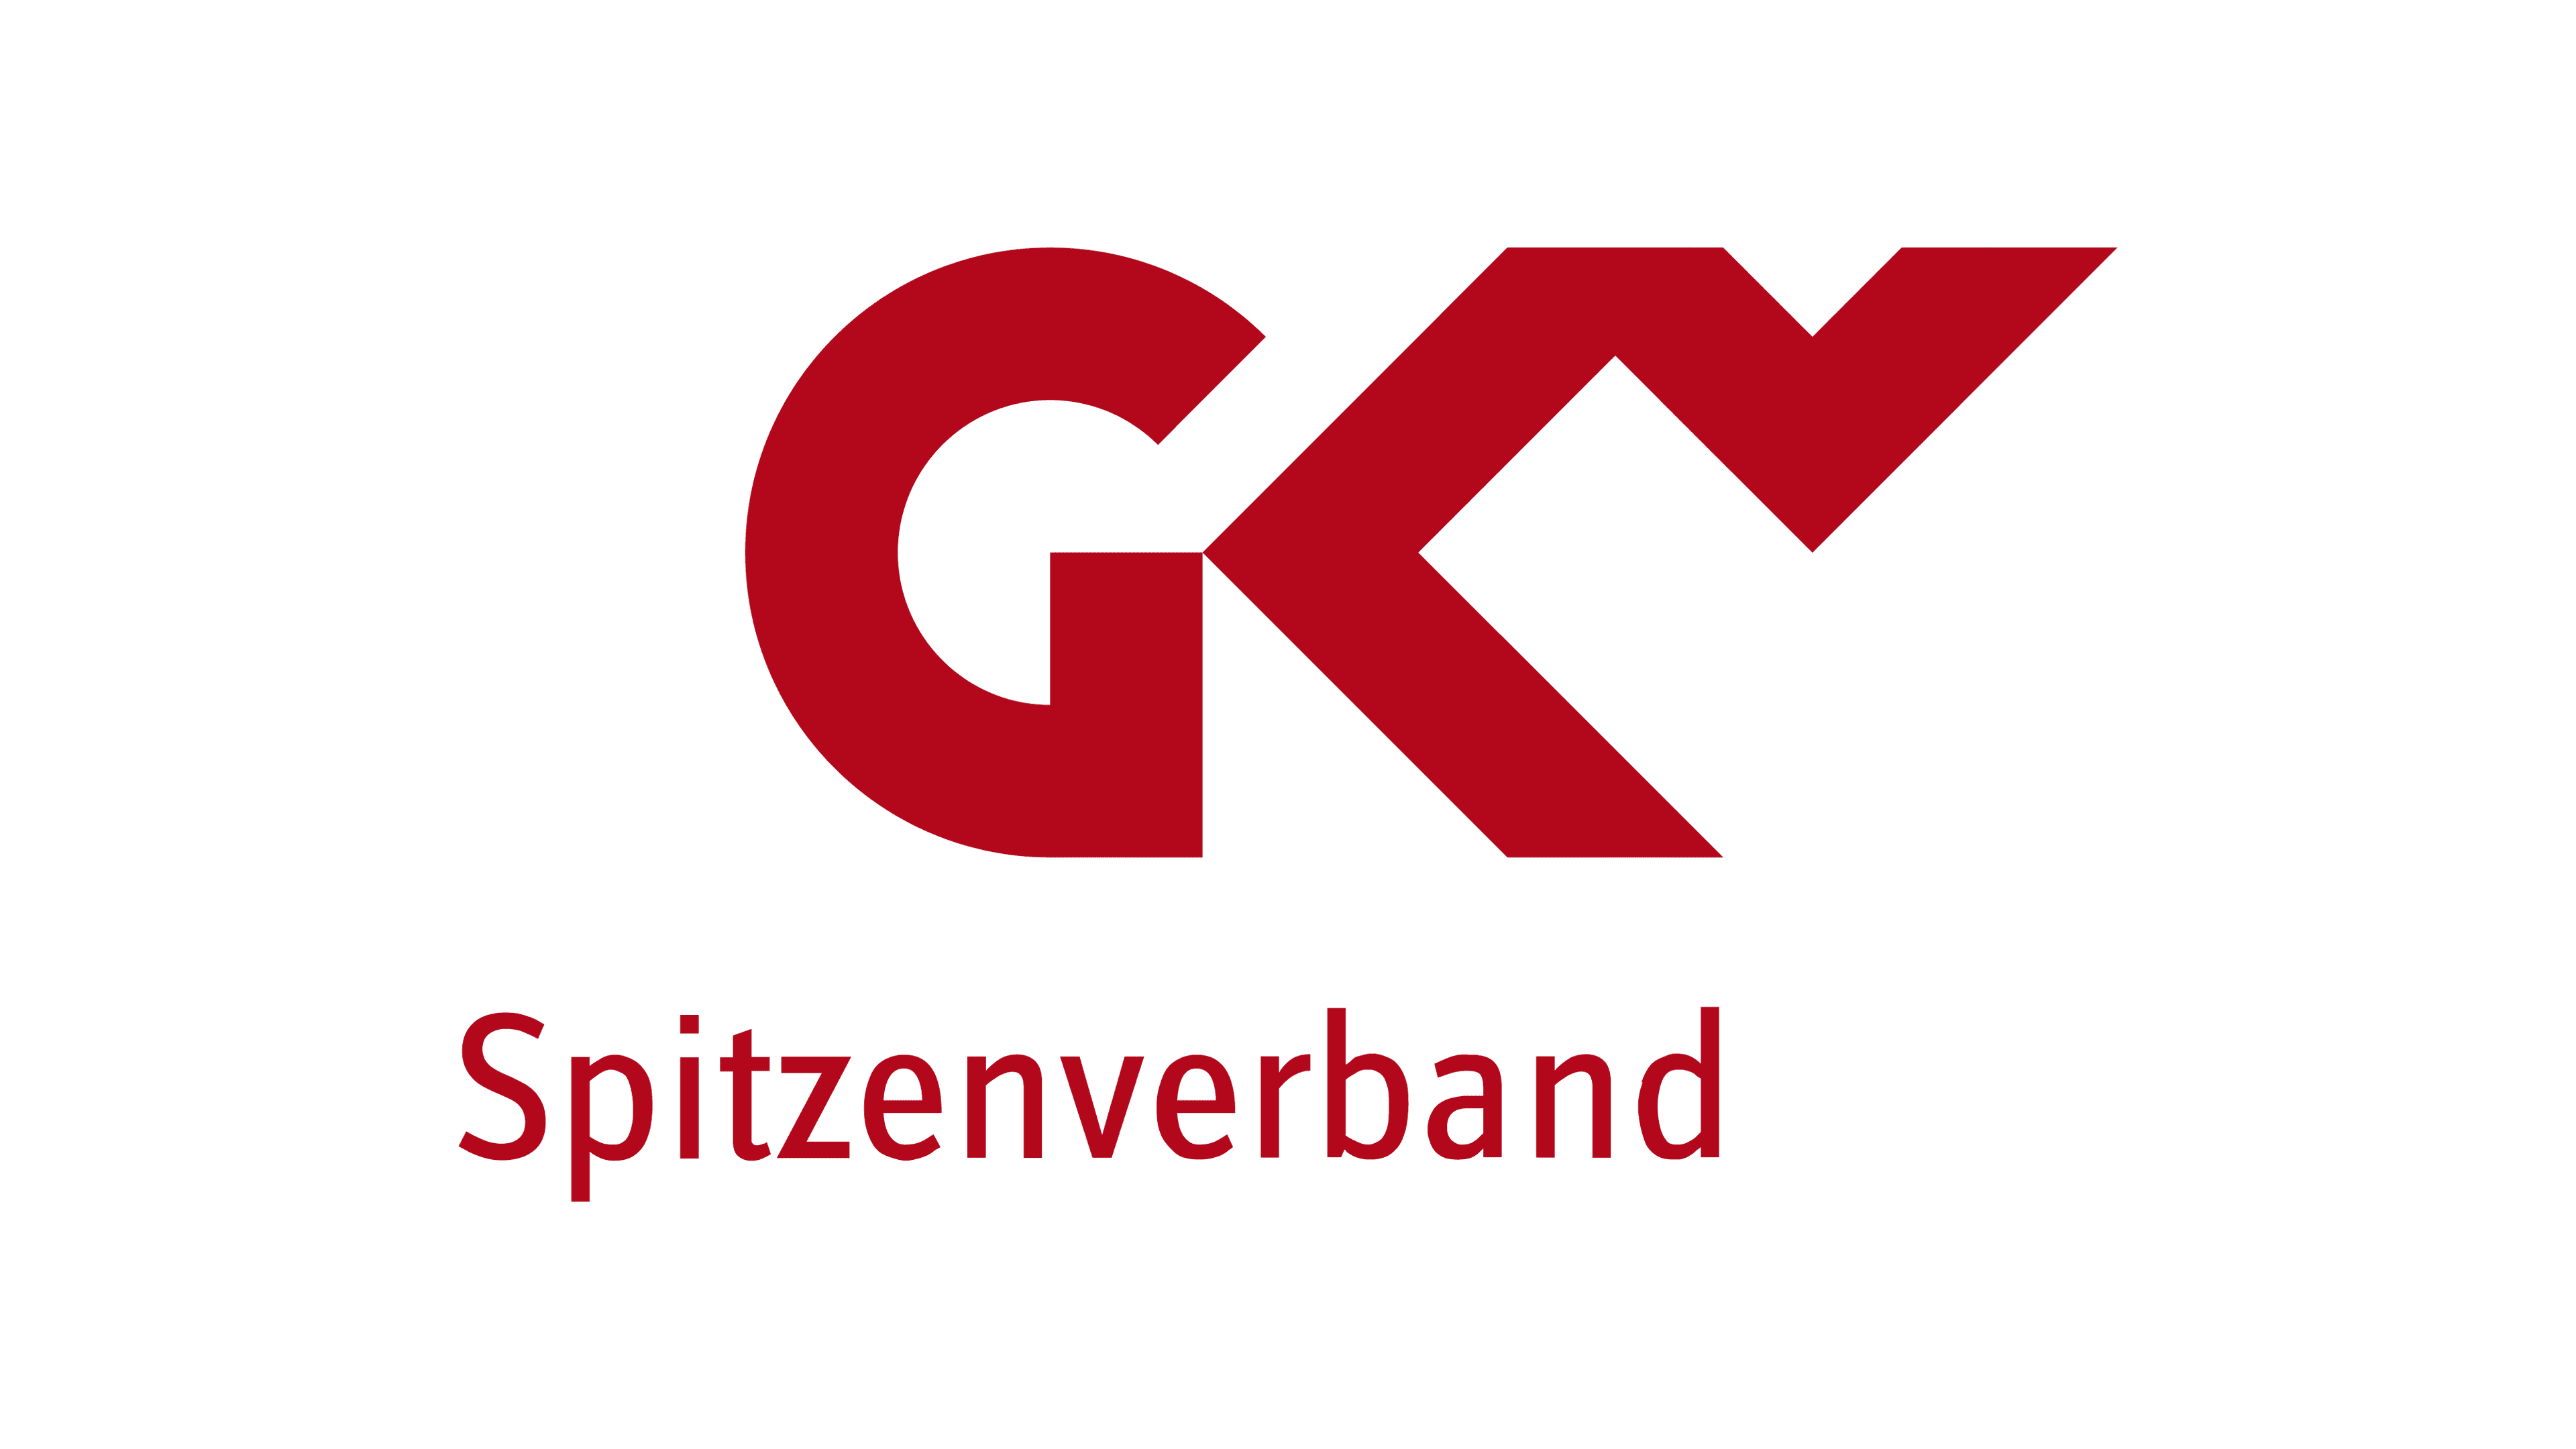 GKV-Spitzenverband logo